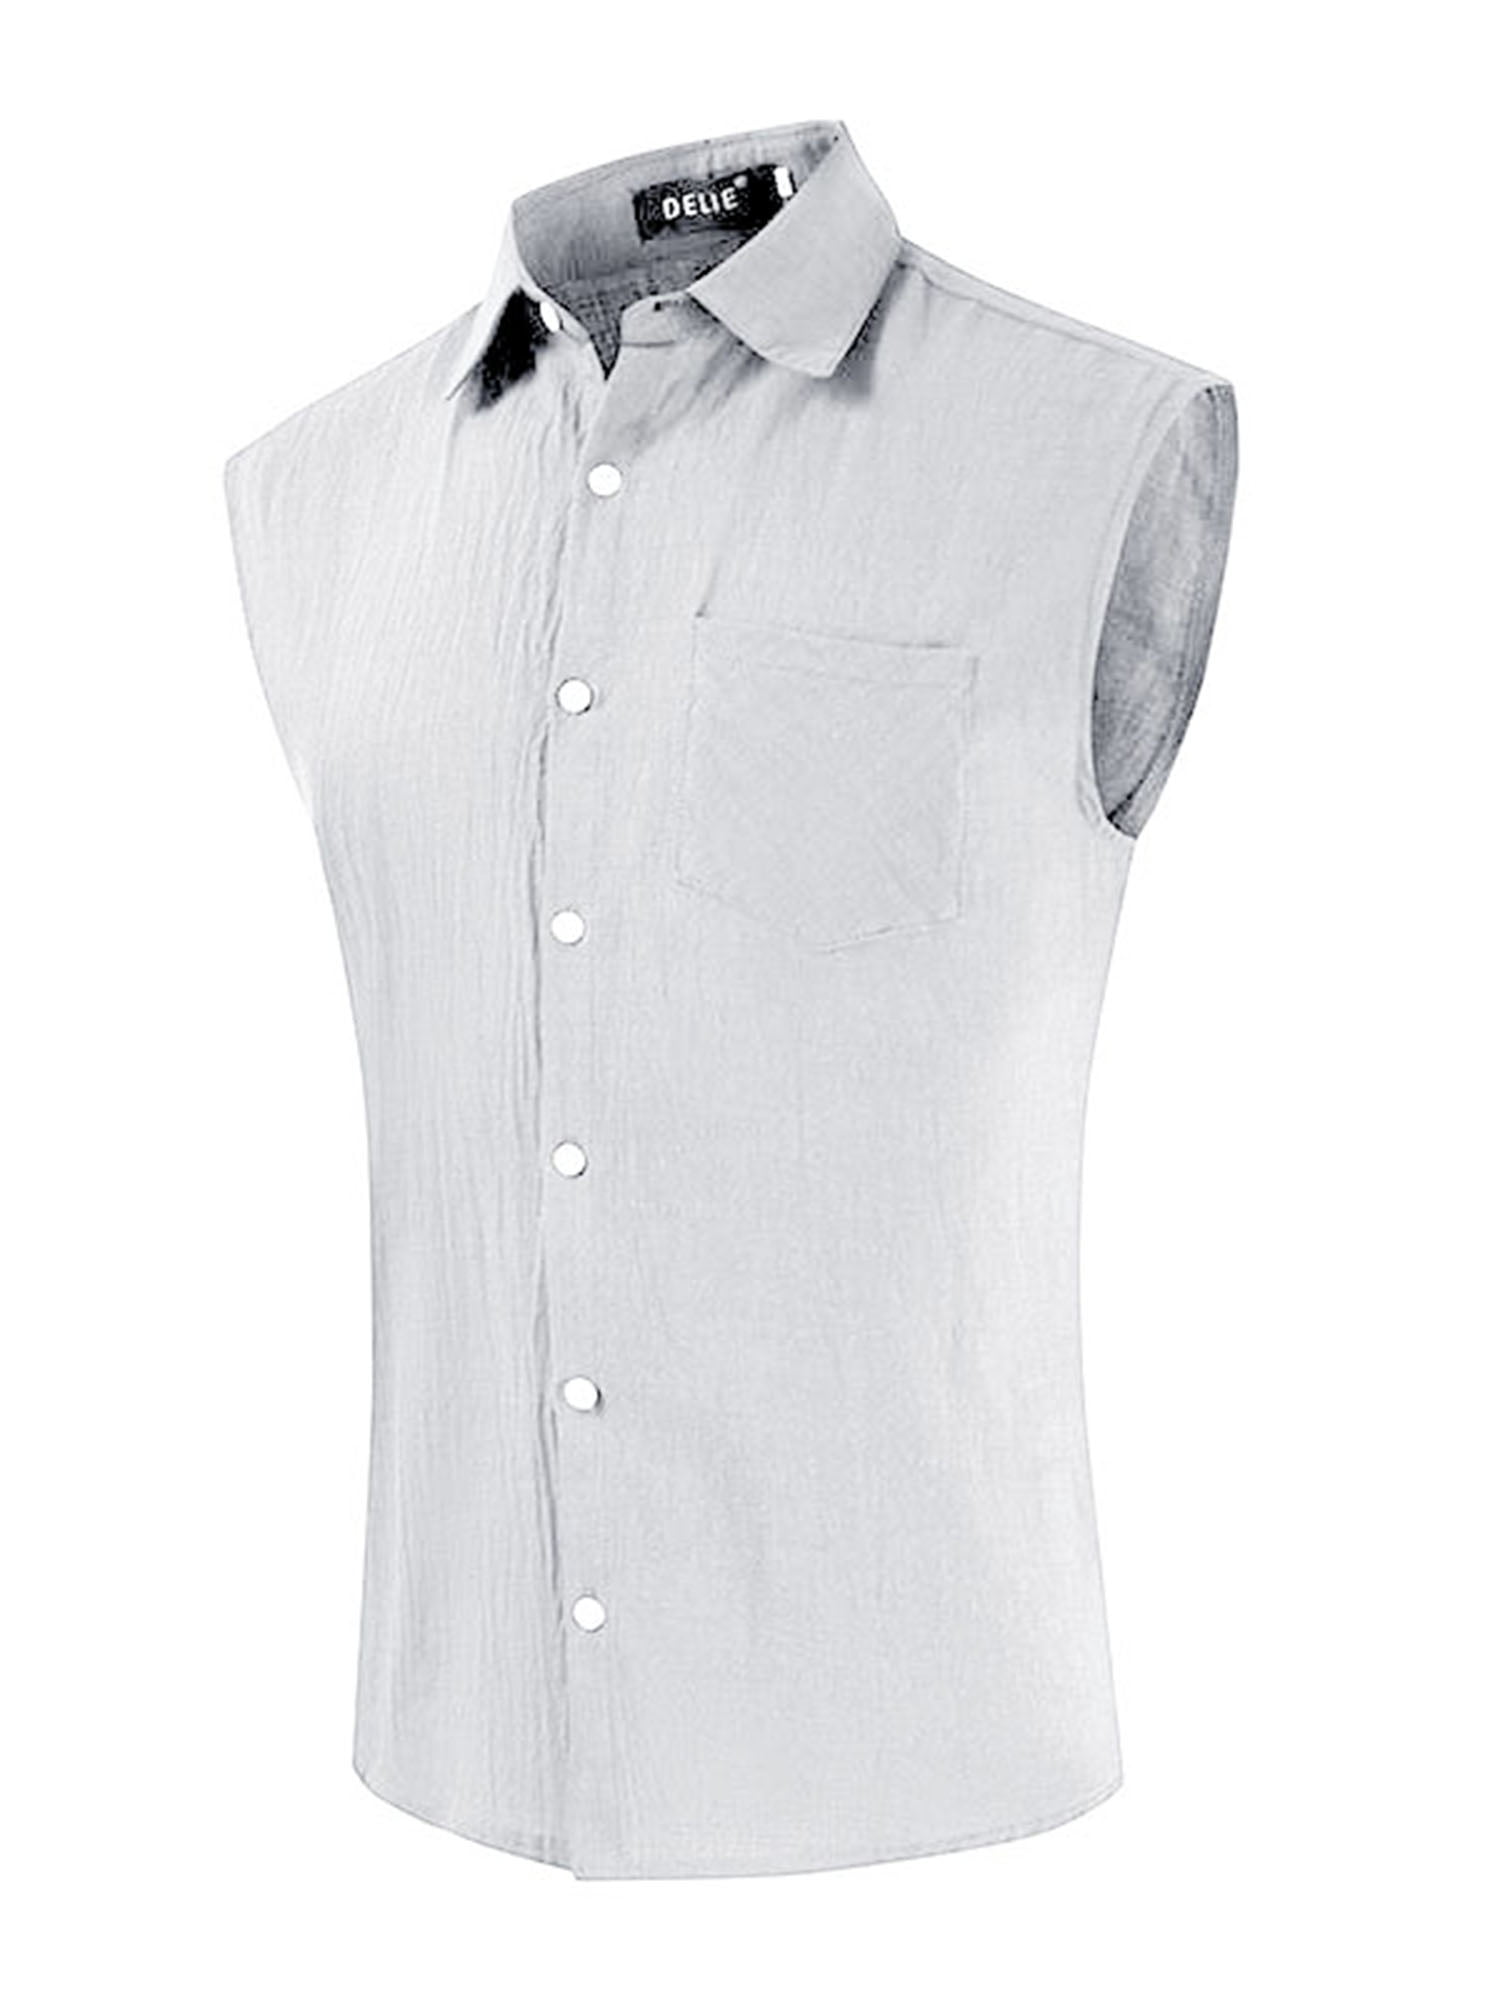 Bbalizko Mens Sleeveless Button Down Shirts Linen Cotton Summer Beach Basic Tank T-Shirt Tops 